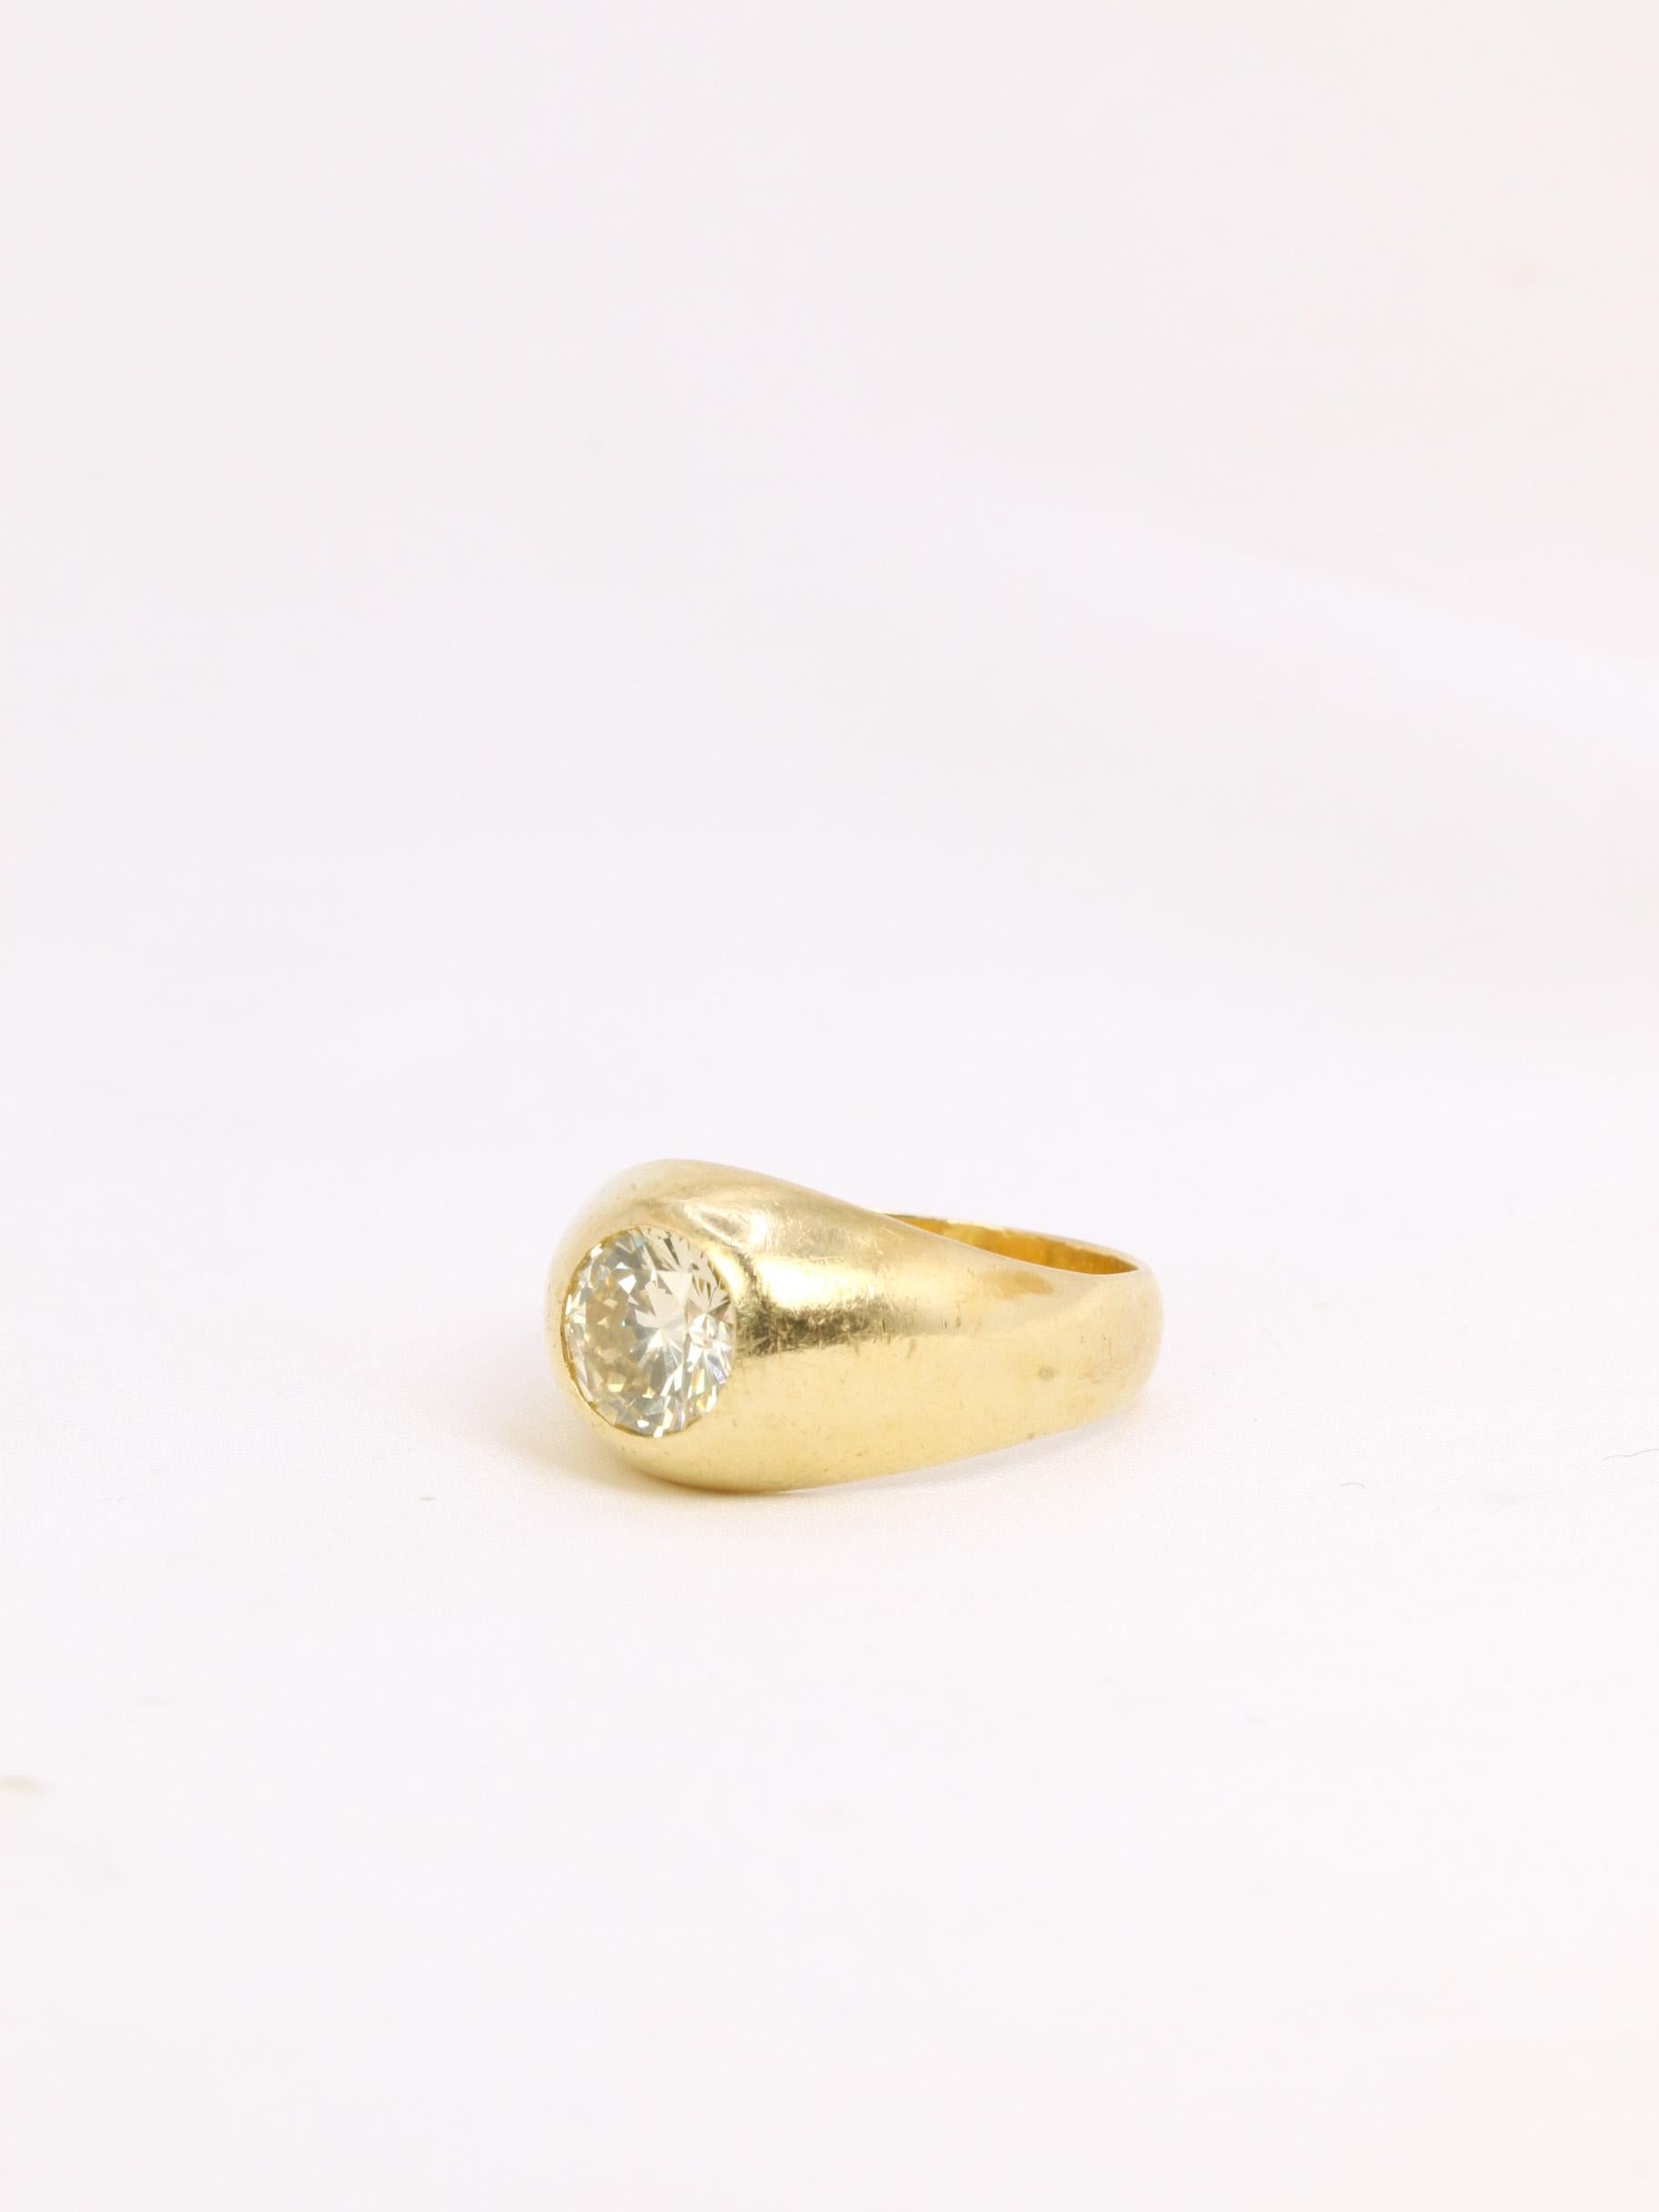 Bague jonc anglais en or 18k (750°/°°) sertie en son centre d'un diamant champagne pesant environ 1,4 ct. Travail probablement français des années 1970. Poinçon tête de hibou pour les ouvrages d'occasion en or 18 carats.
Tour de doigt : 55, mise à